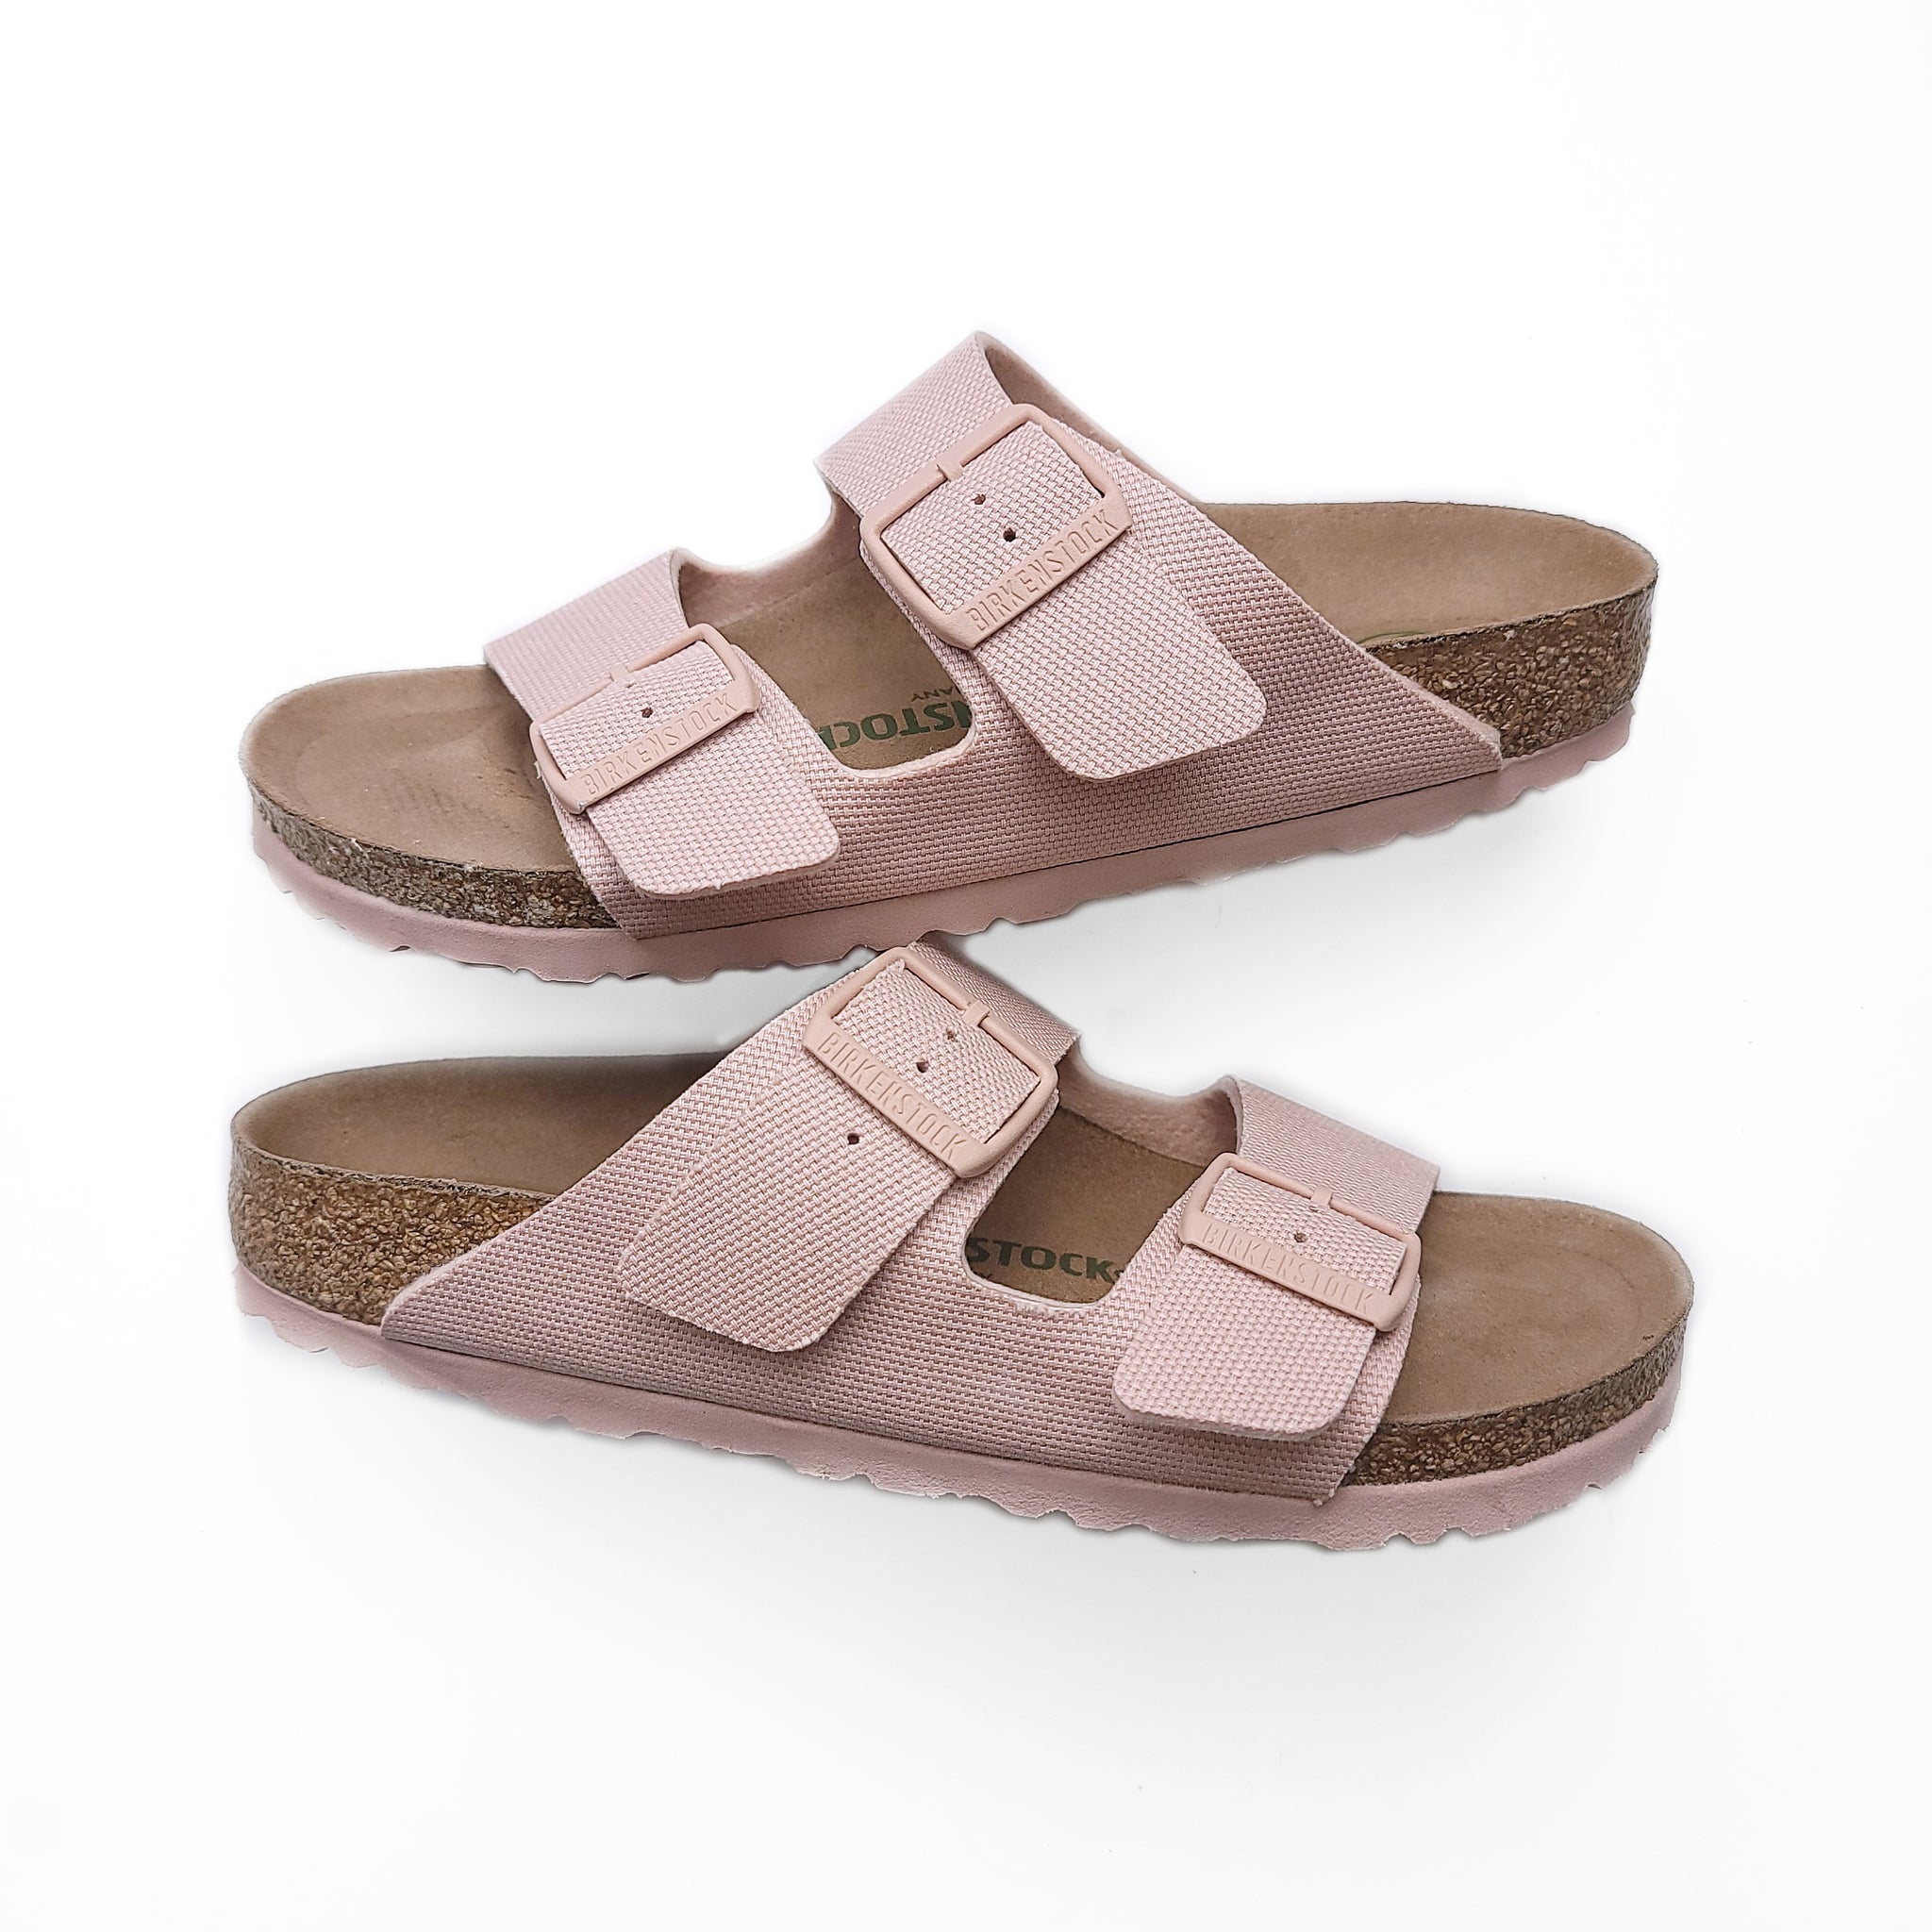 Where to Buy Pink Birkenstock Sandals